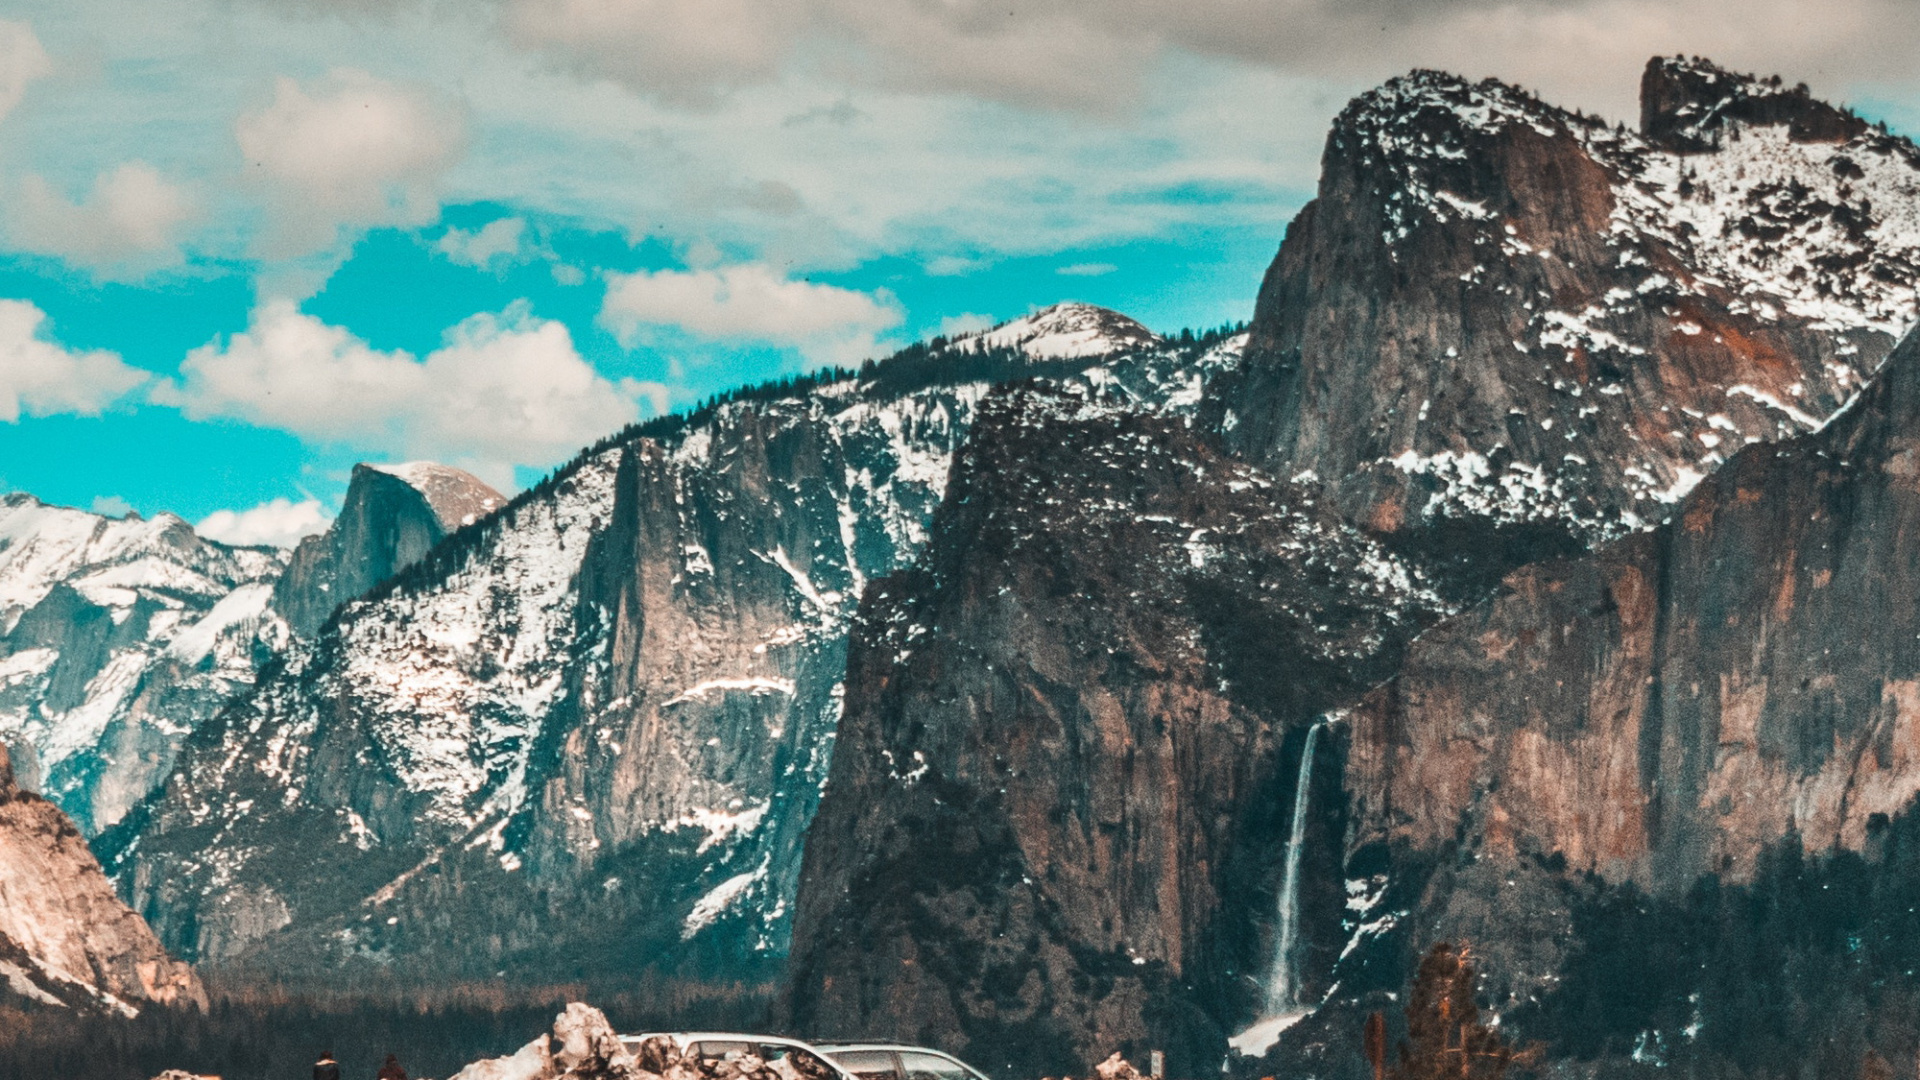 Yosemite-National-Park-El-Capitan-Road-Nature-iPhone-Wallpaper - iPhone  Wallpapers